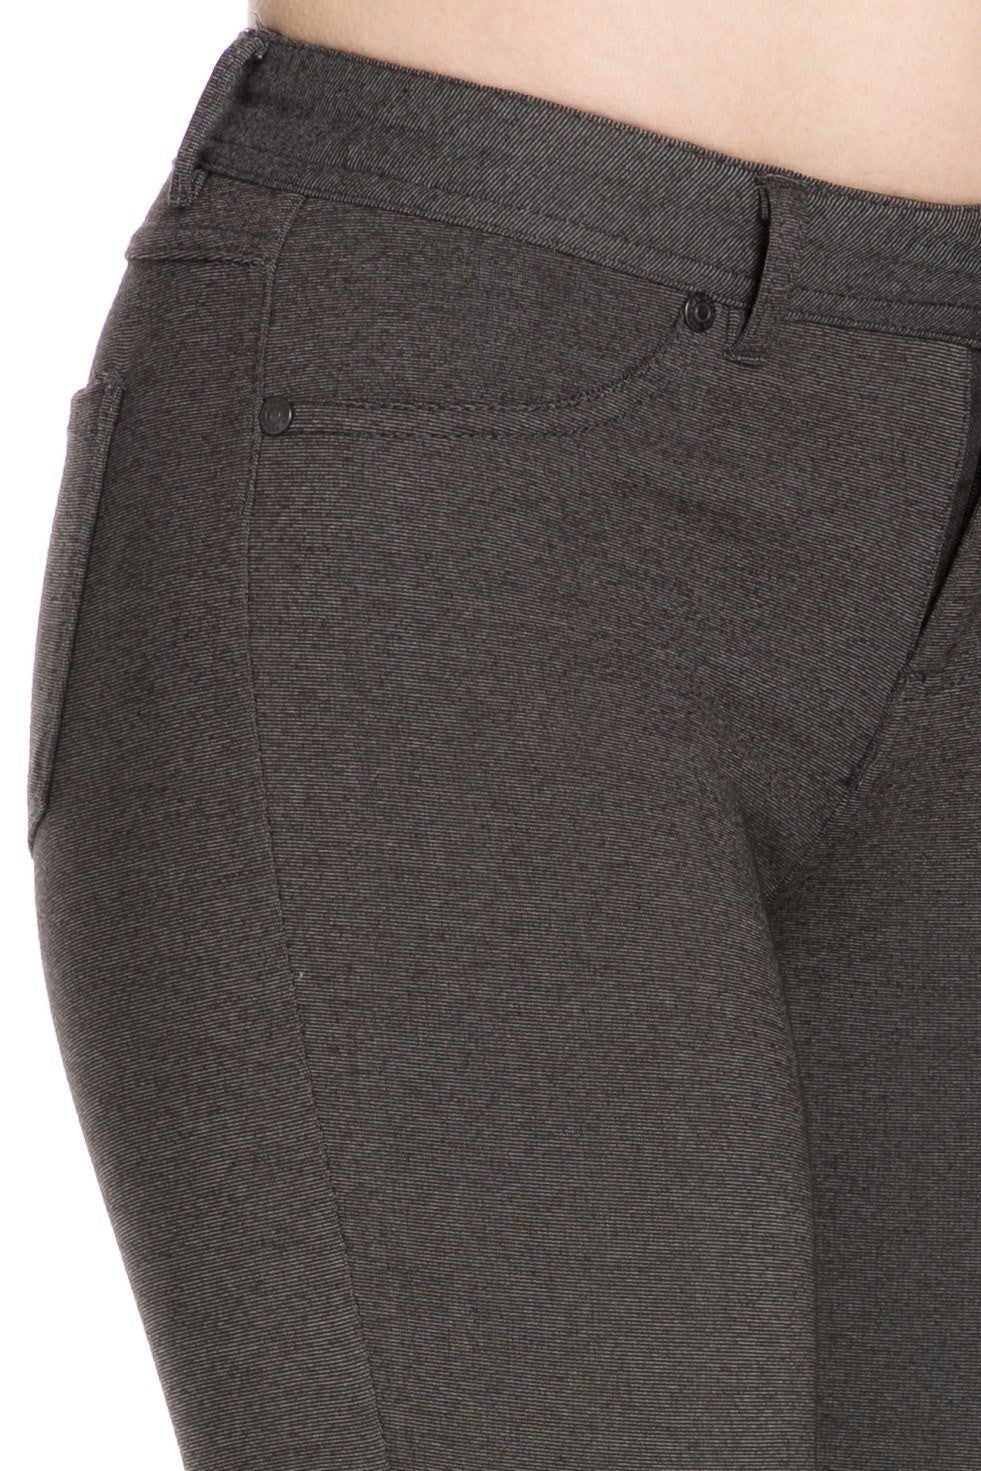 4 Way Stretchy Ponte Knit Capri Skinny Jeans (Charcoal) - Poplooks